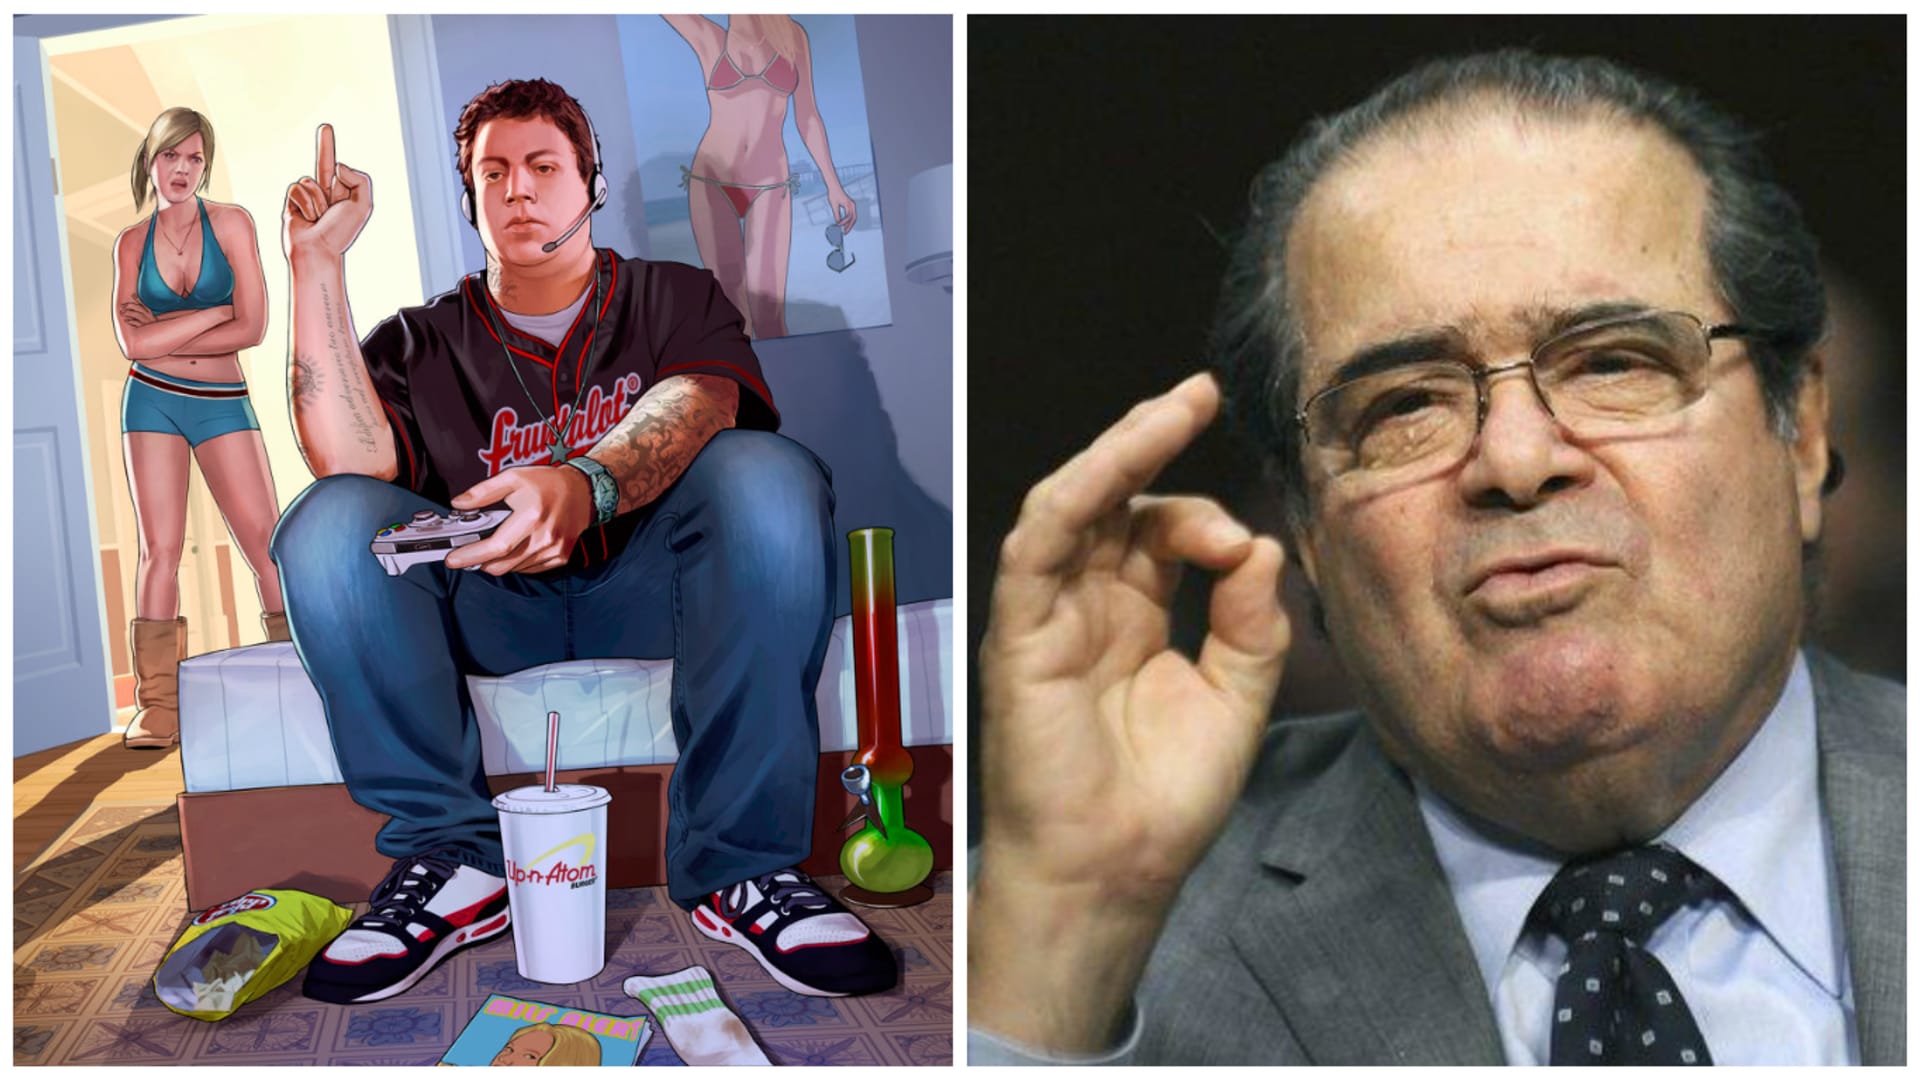 Scalia by měl být mezi hráči ikona, protože dal herním vývojářům možnost opravdu svobodné tvorby